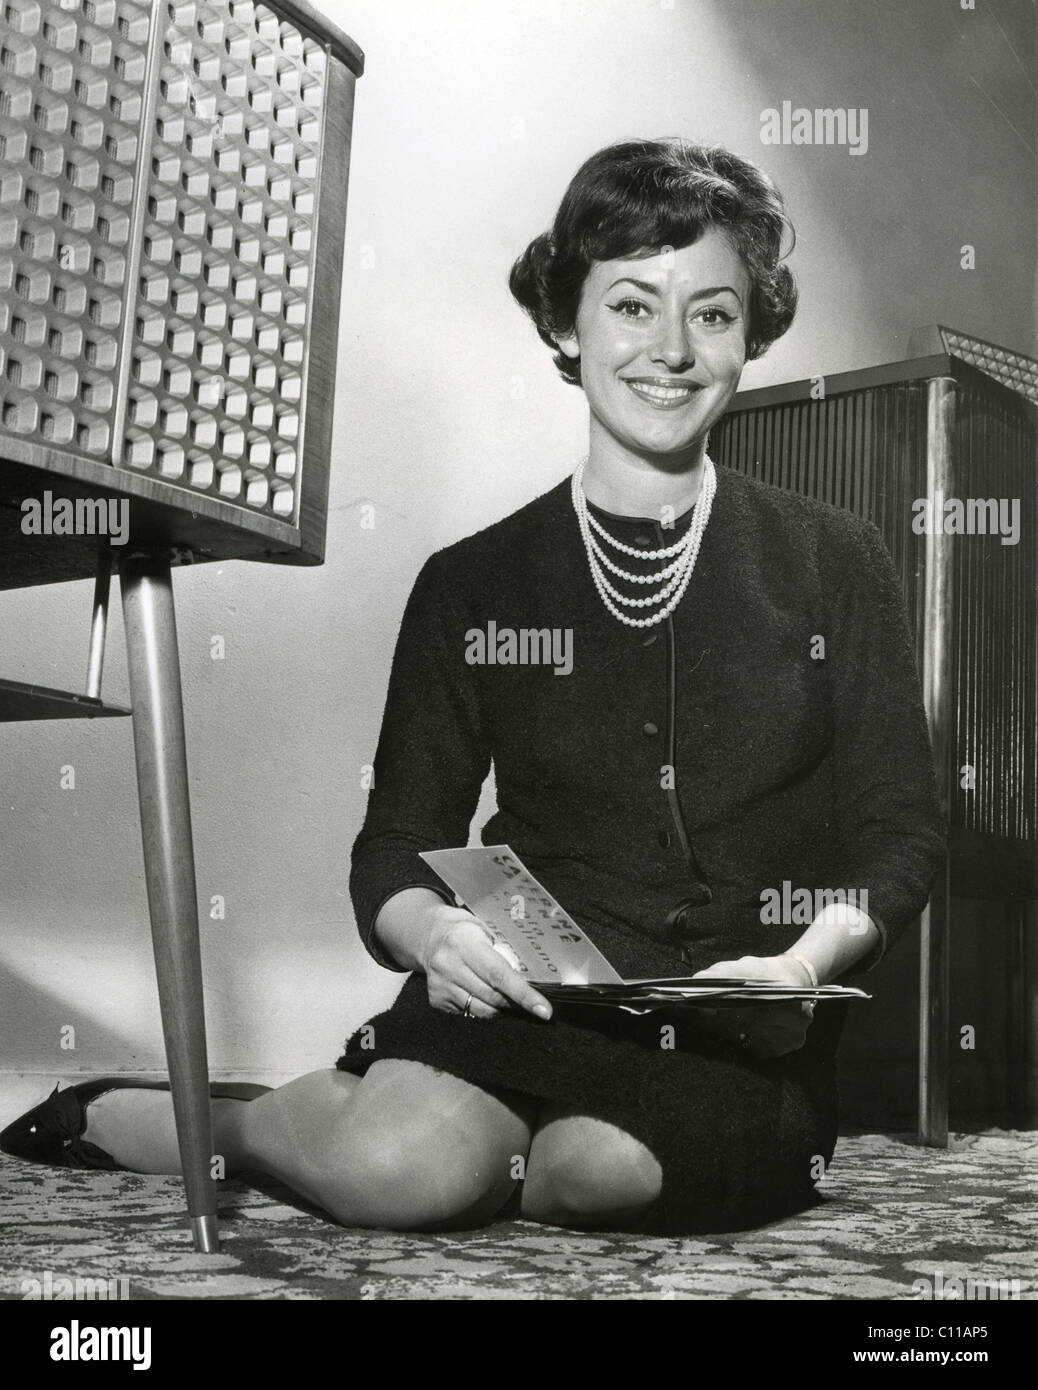 CATARINA VALENTE, chanteuse franco-italienne à propos de 1960 Banque D'Images